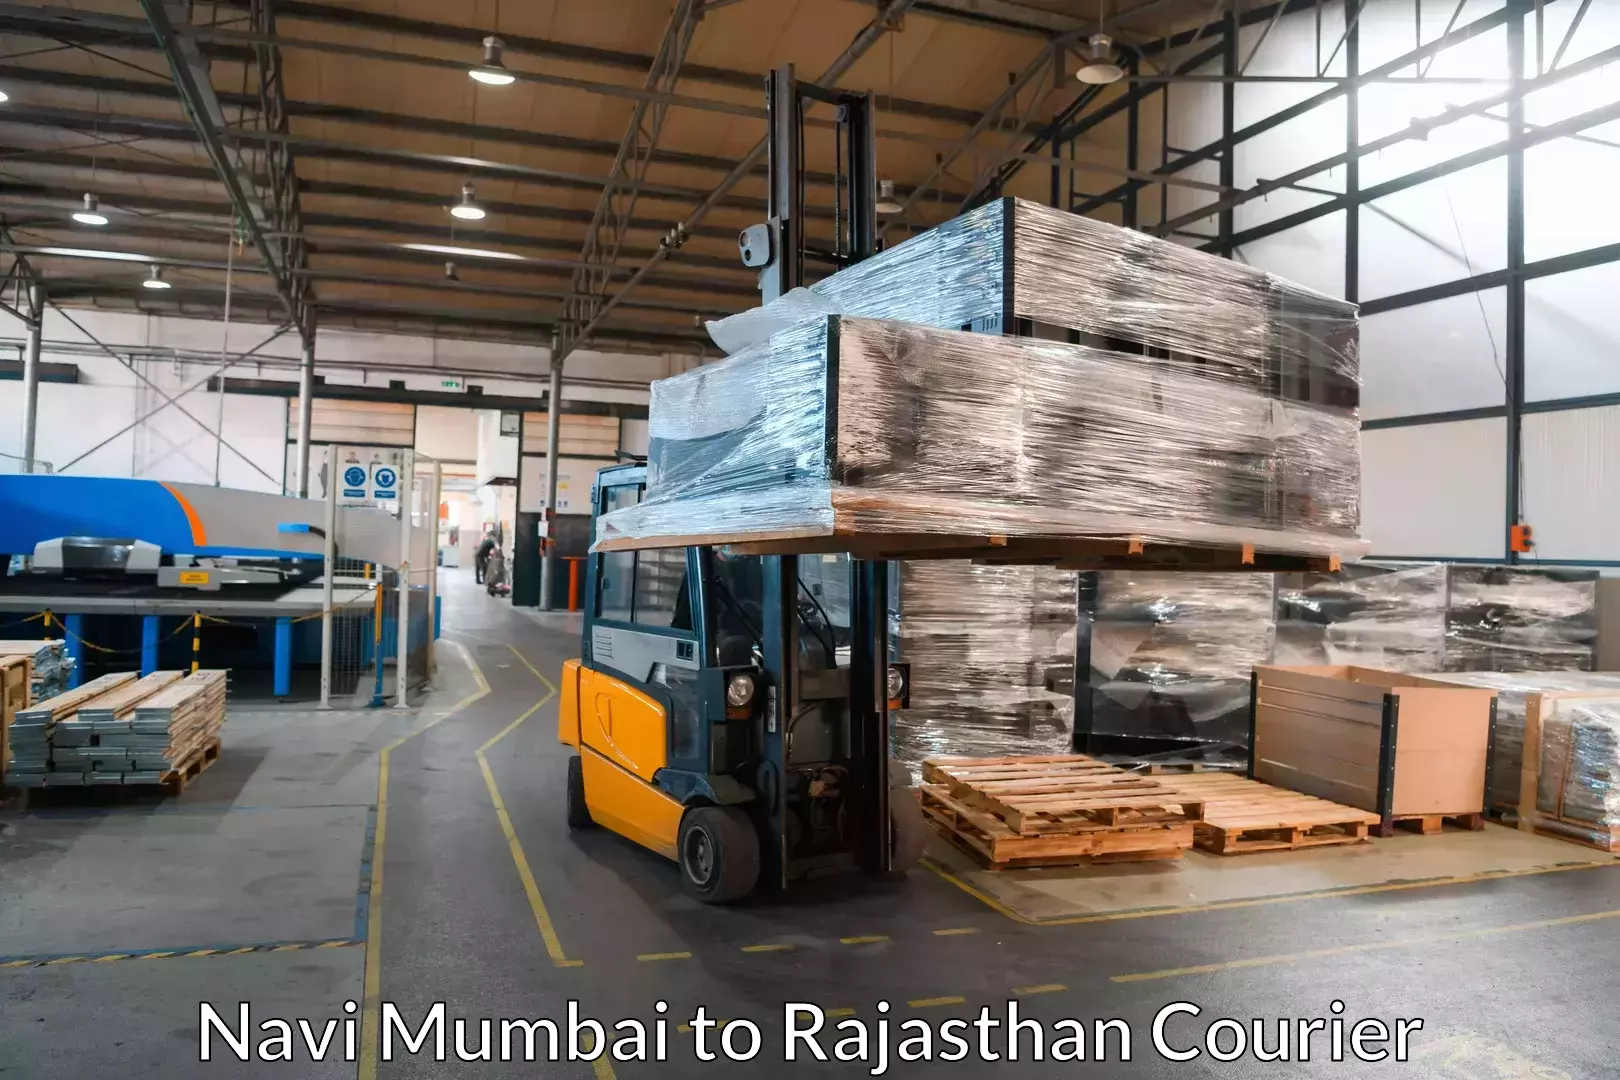 Furniture transport company Navi Mumbai to Alwar